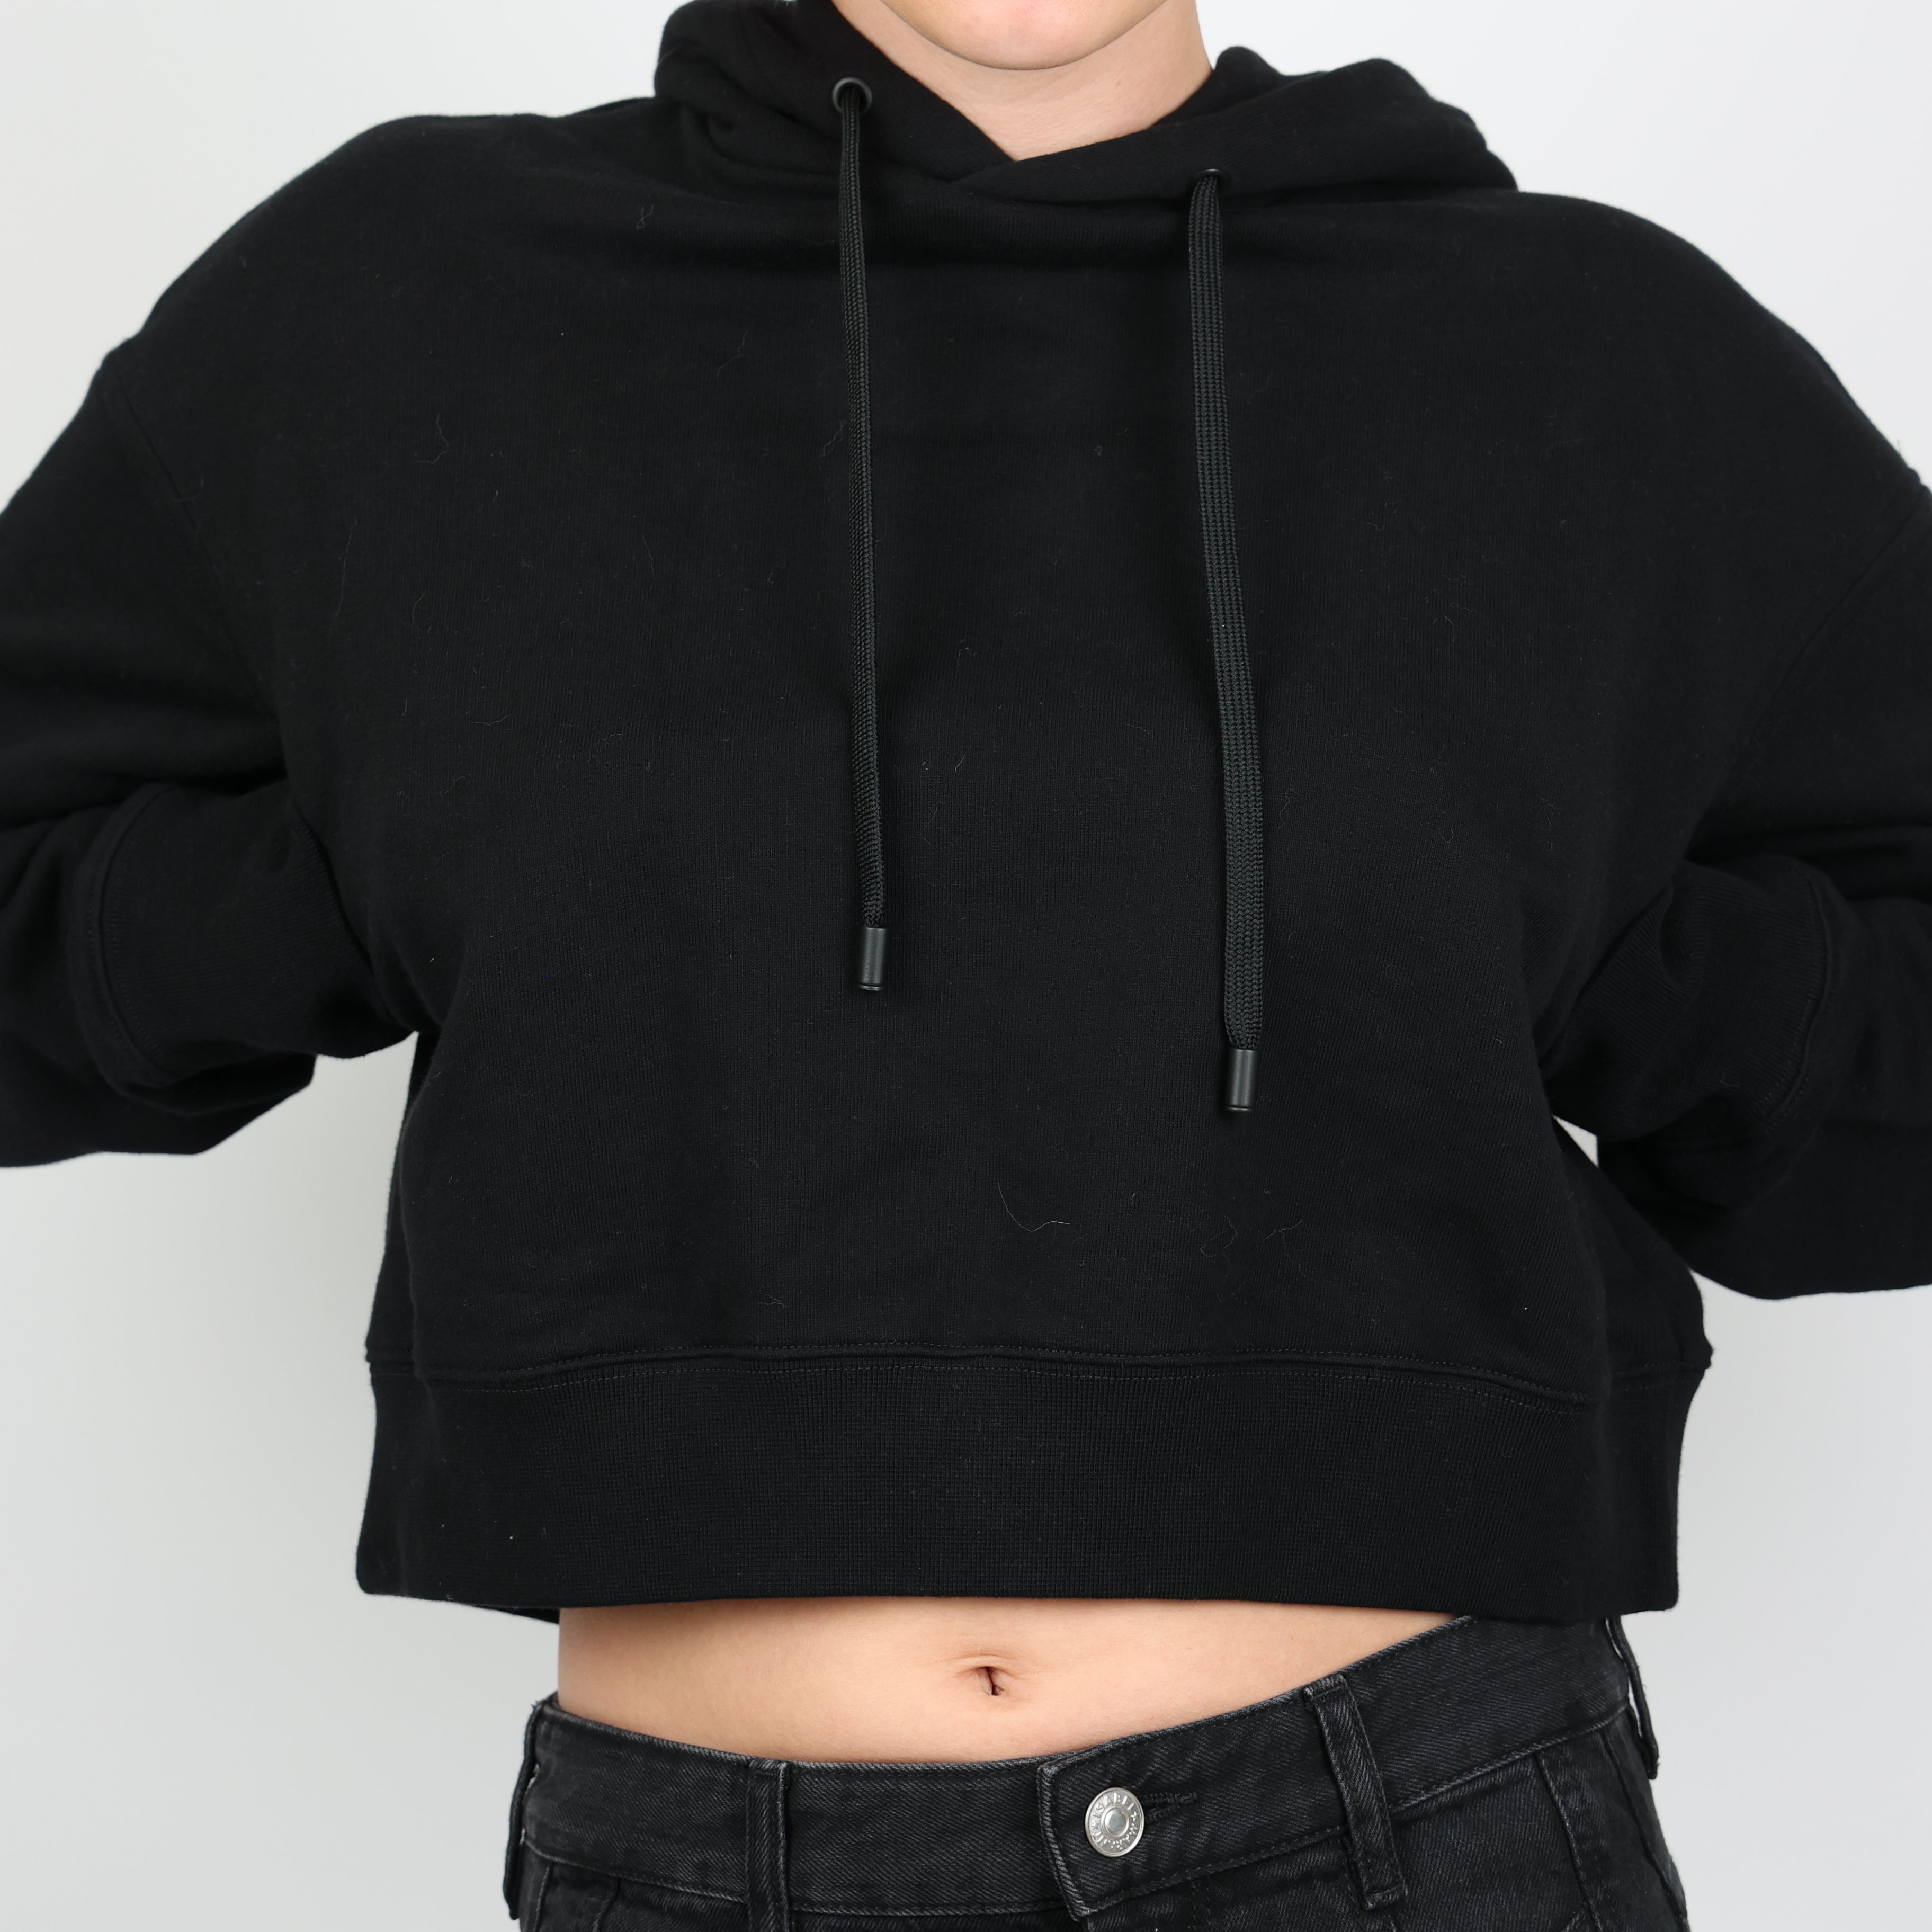 Sweatshirt, UK Size 8